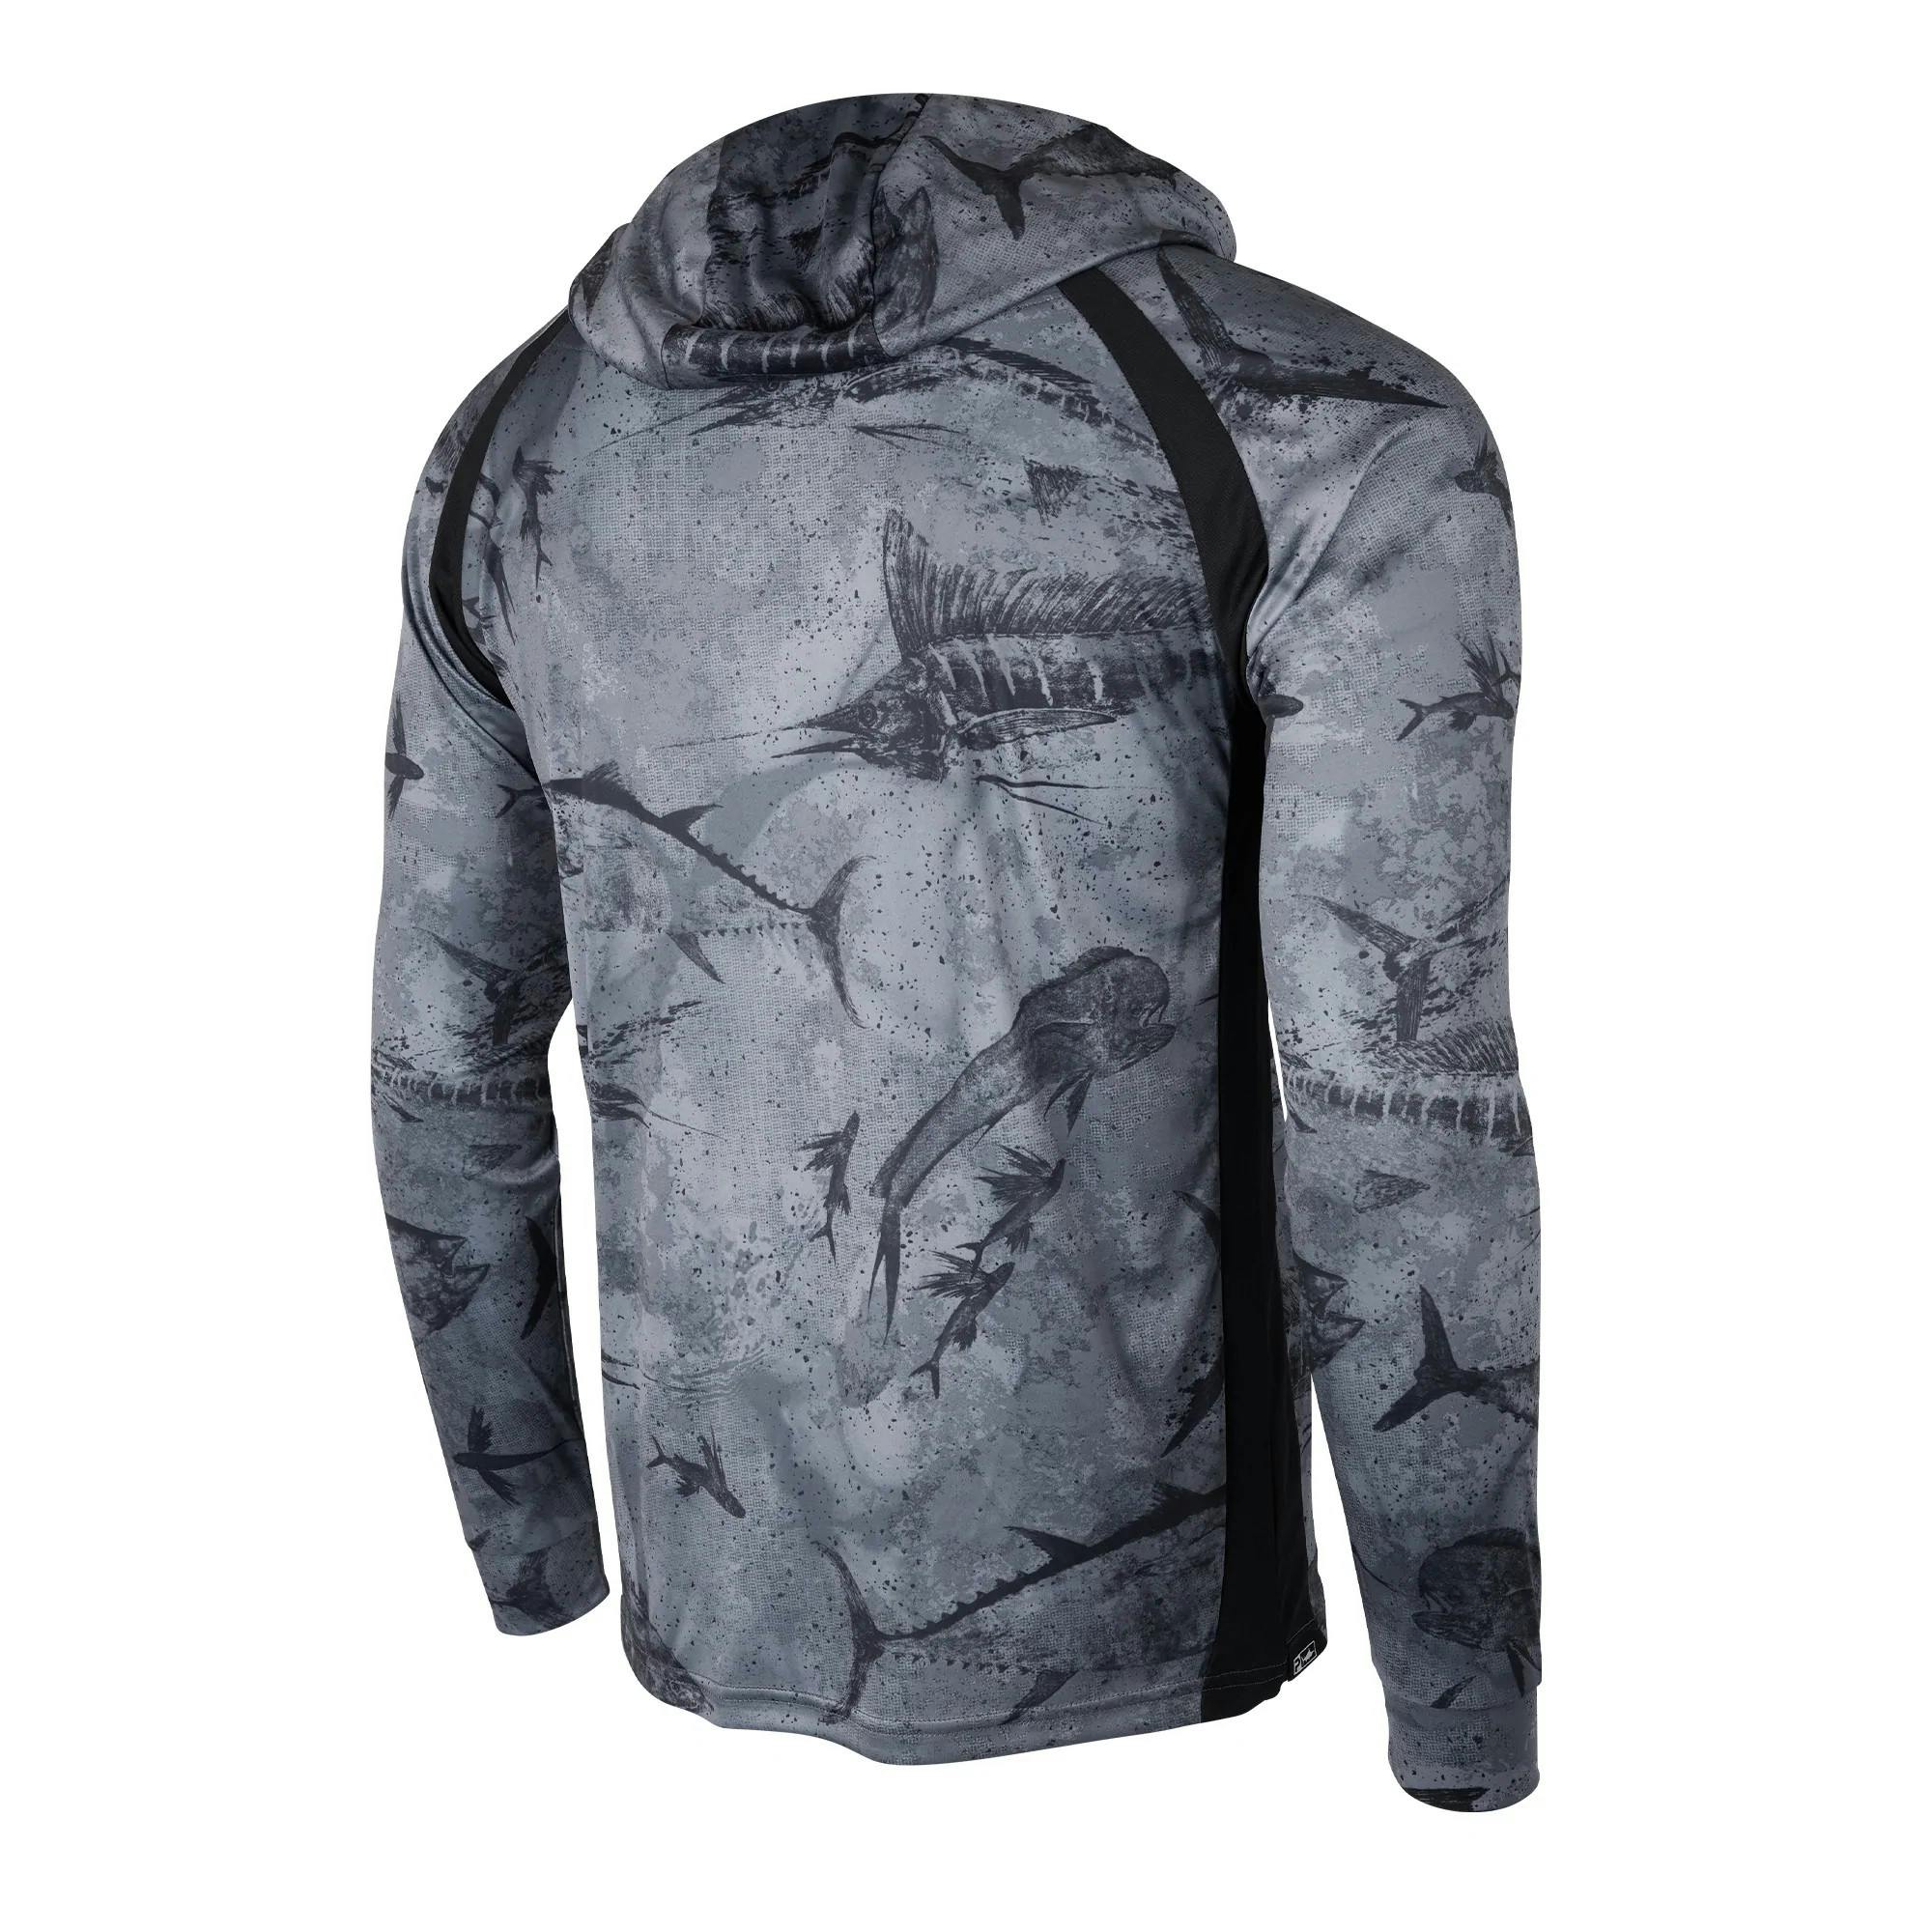 Pelagic Vaportek Hooded Fishing Shirt (Men’s) Back - Black